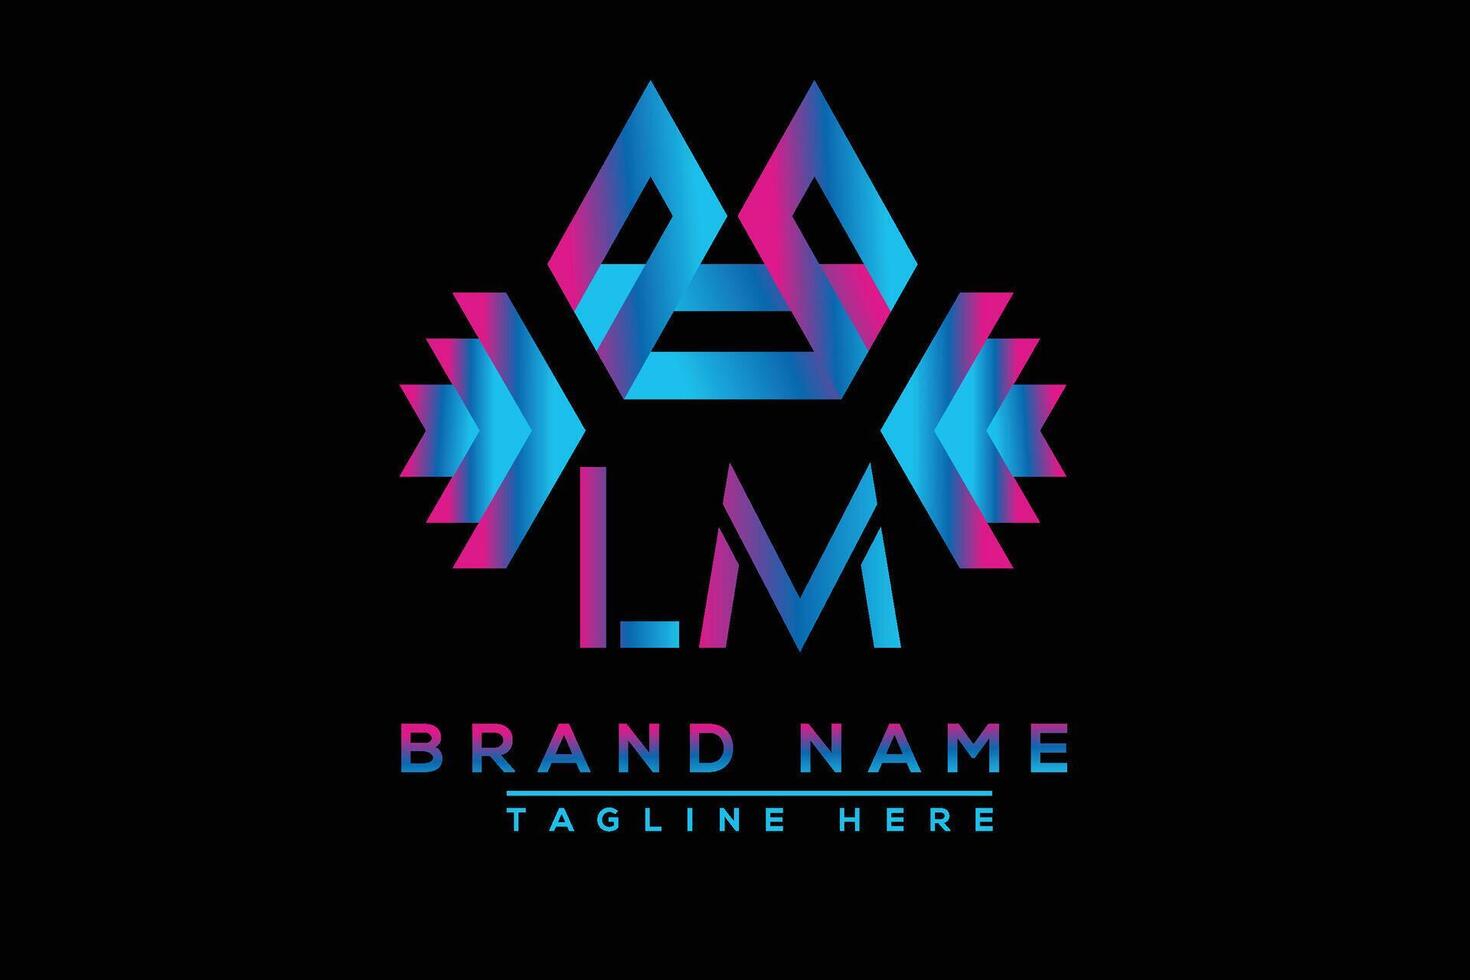 LM letter logo design. Vector logo design for business.